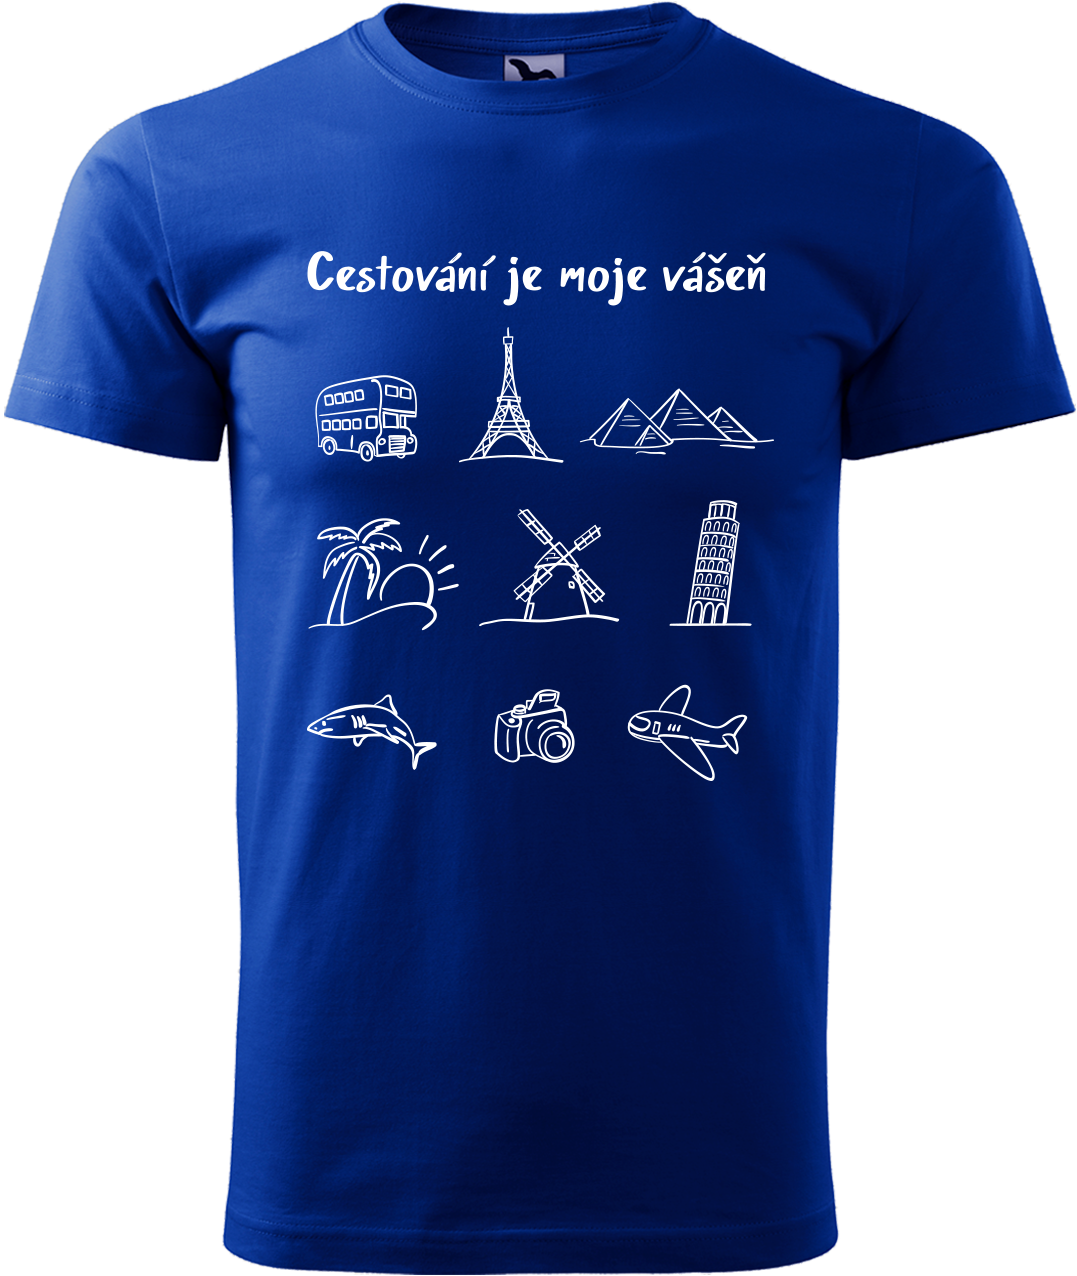 Pánské cestovatelské tričko - Cestování je moje vášeň Velikost: M, Barva: Královská modrá (05)